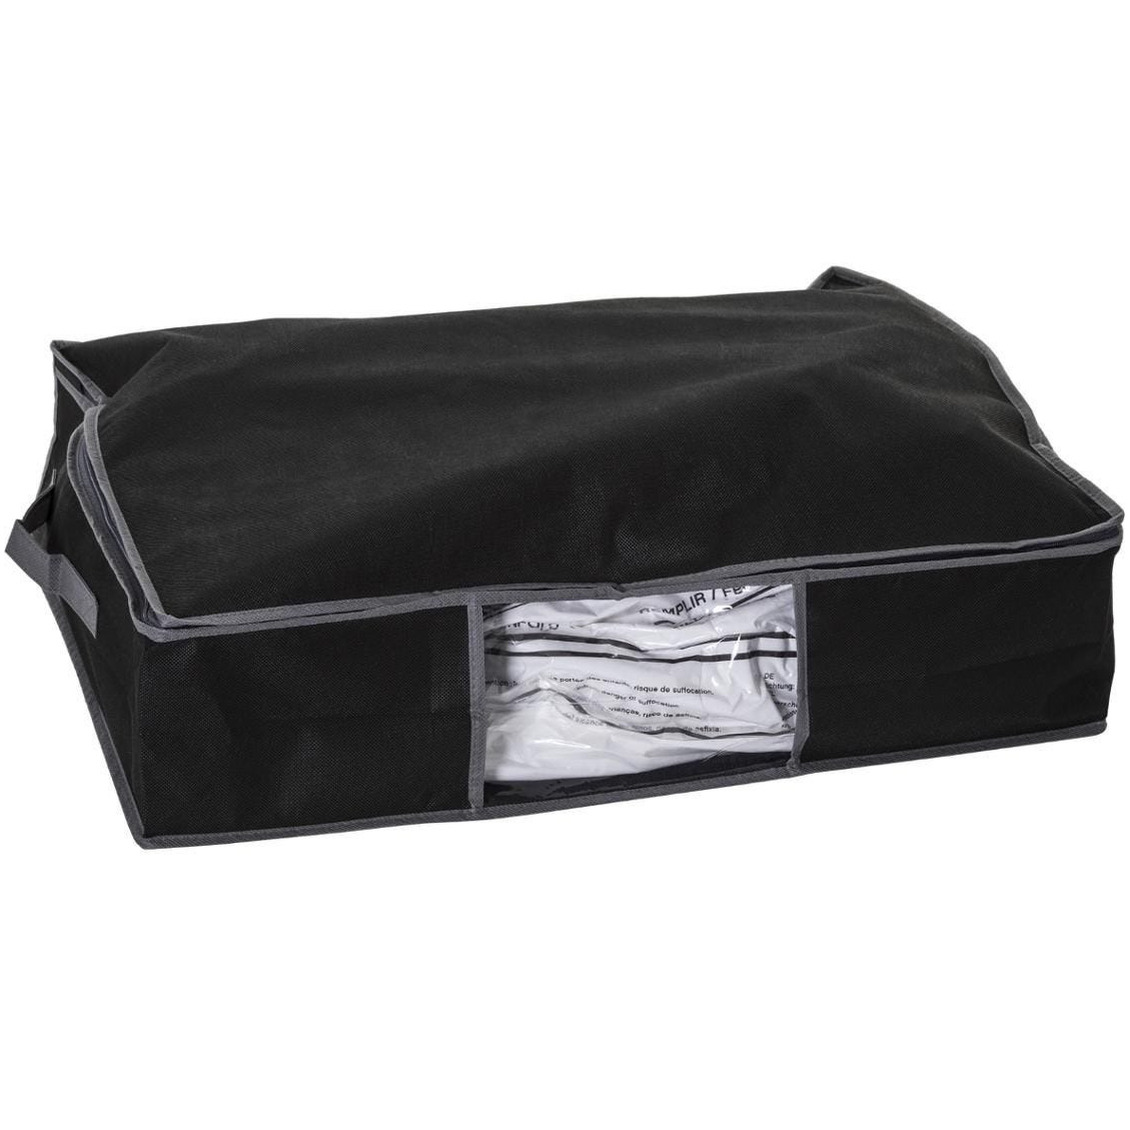 Dekbed-kussen opberghoes zwart met vacuumzak 60 x 45 x 15 cm